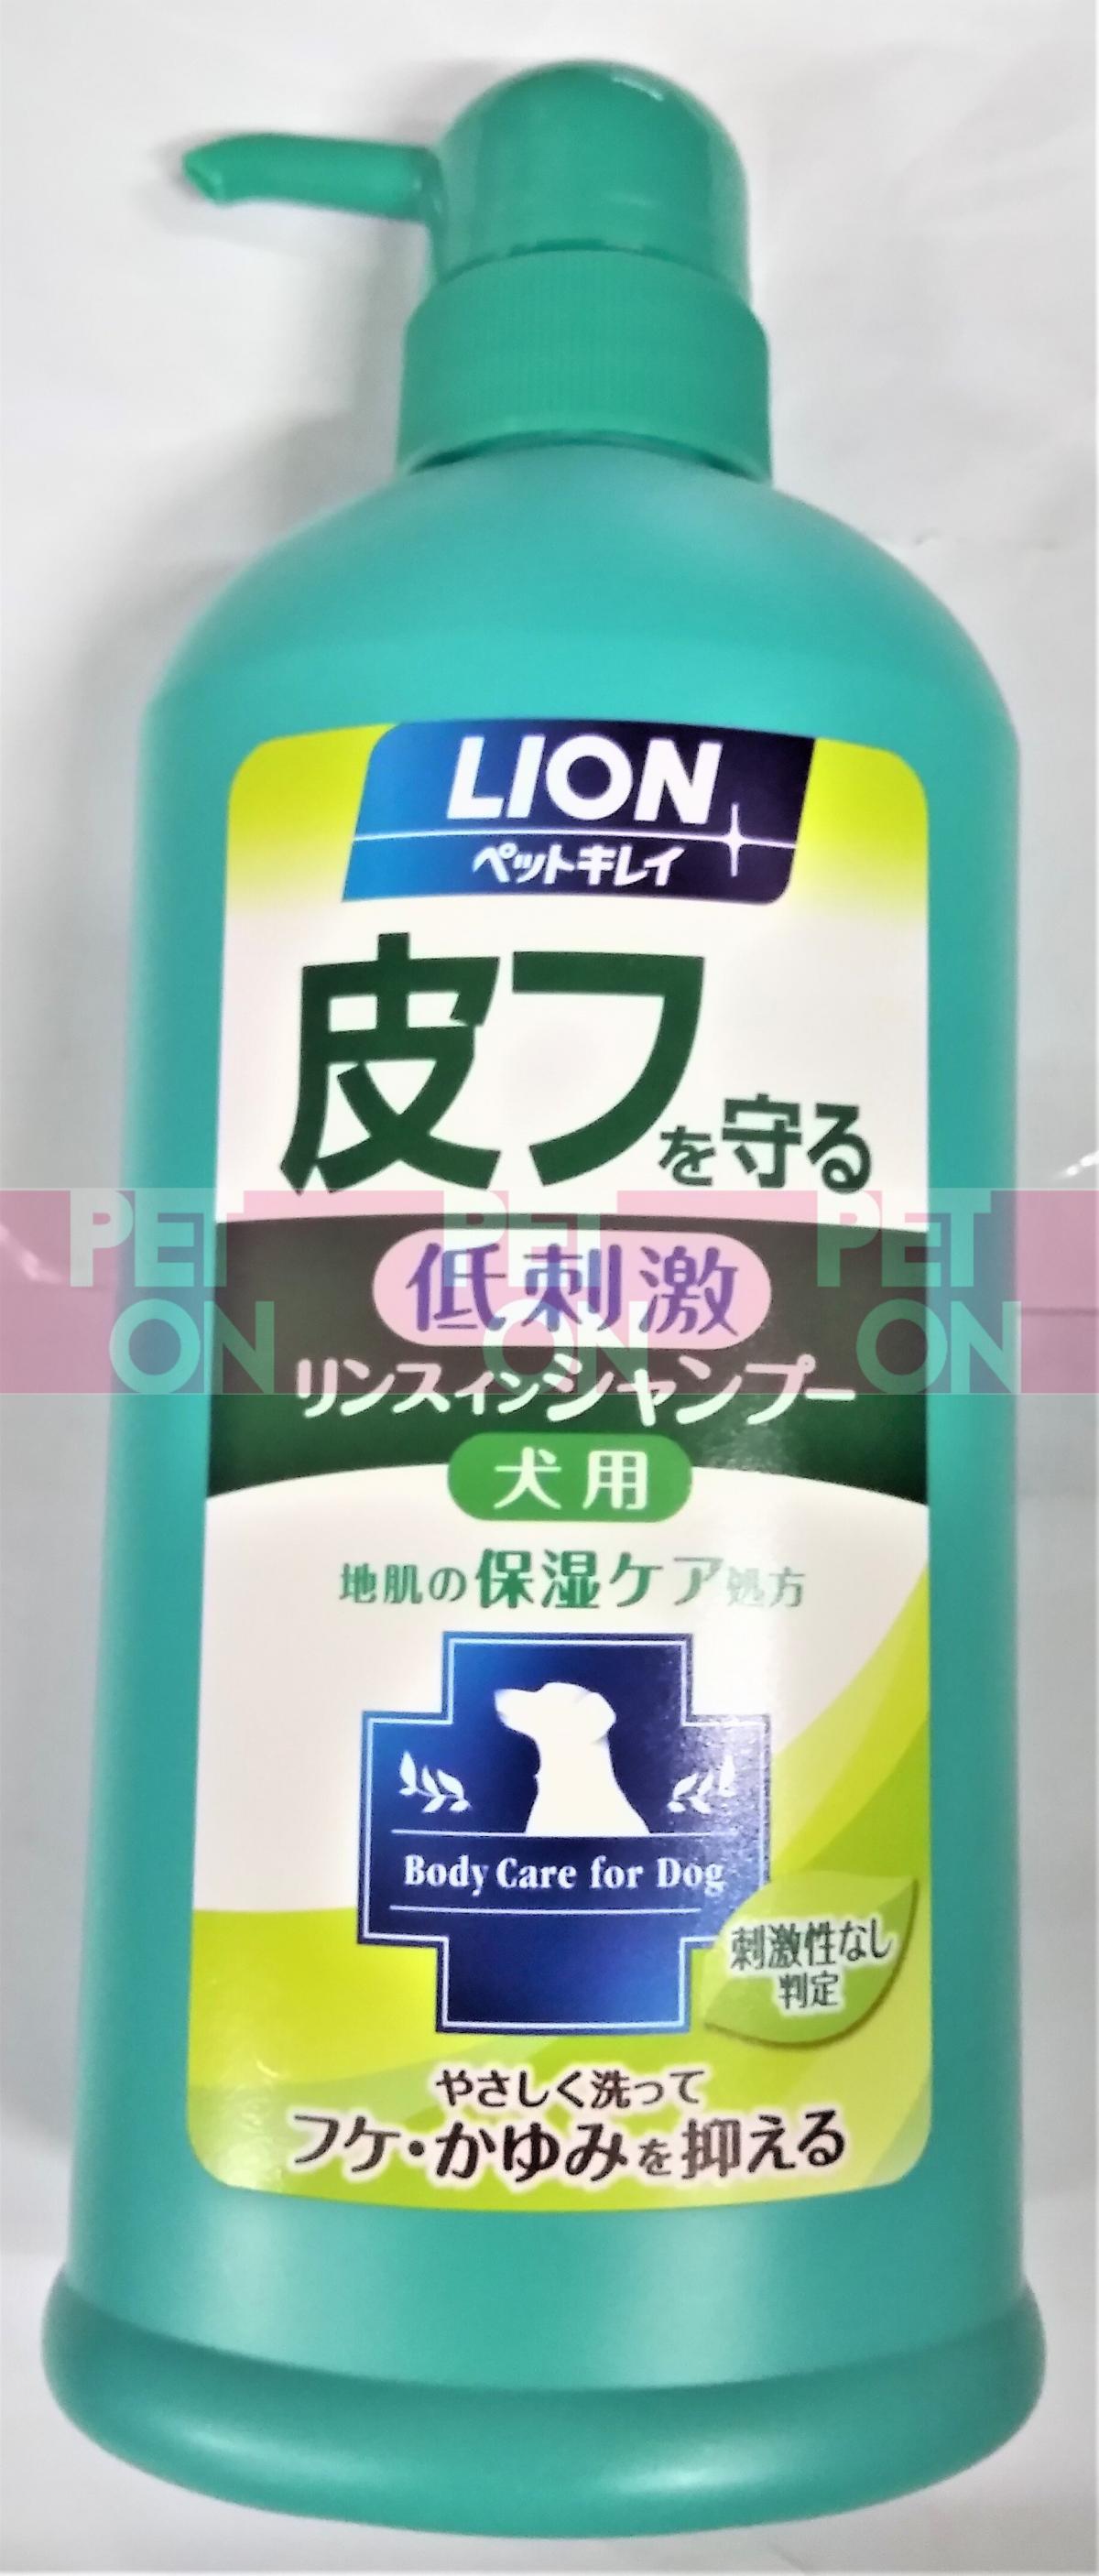 LION 皮膚護理狗用清潔洗毛液 550ml (00189) (日本平行進口)